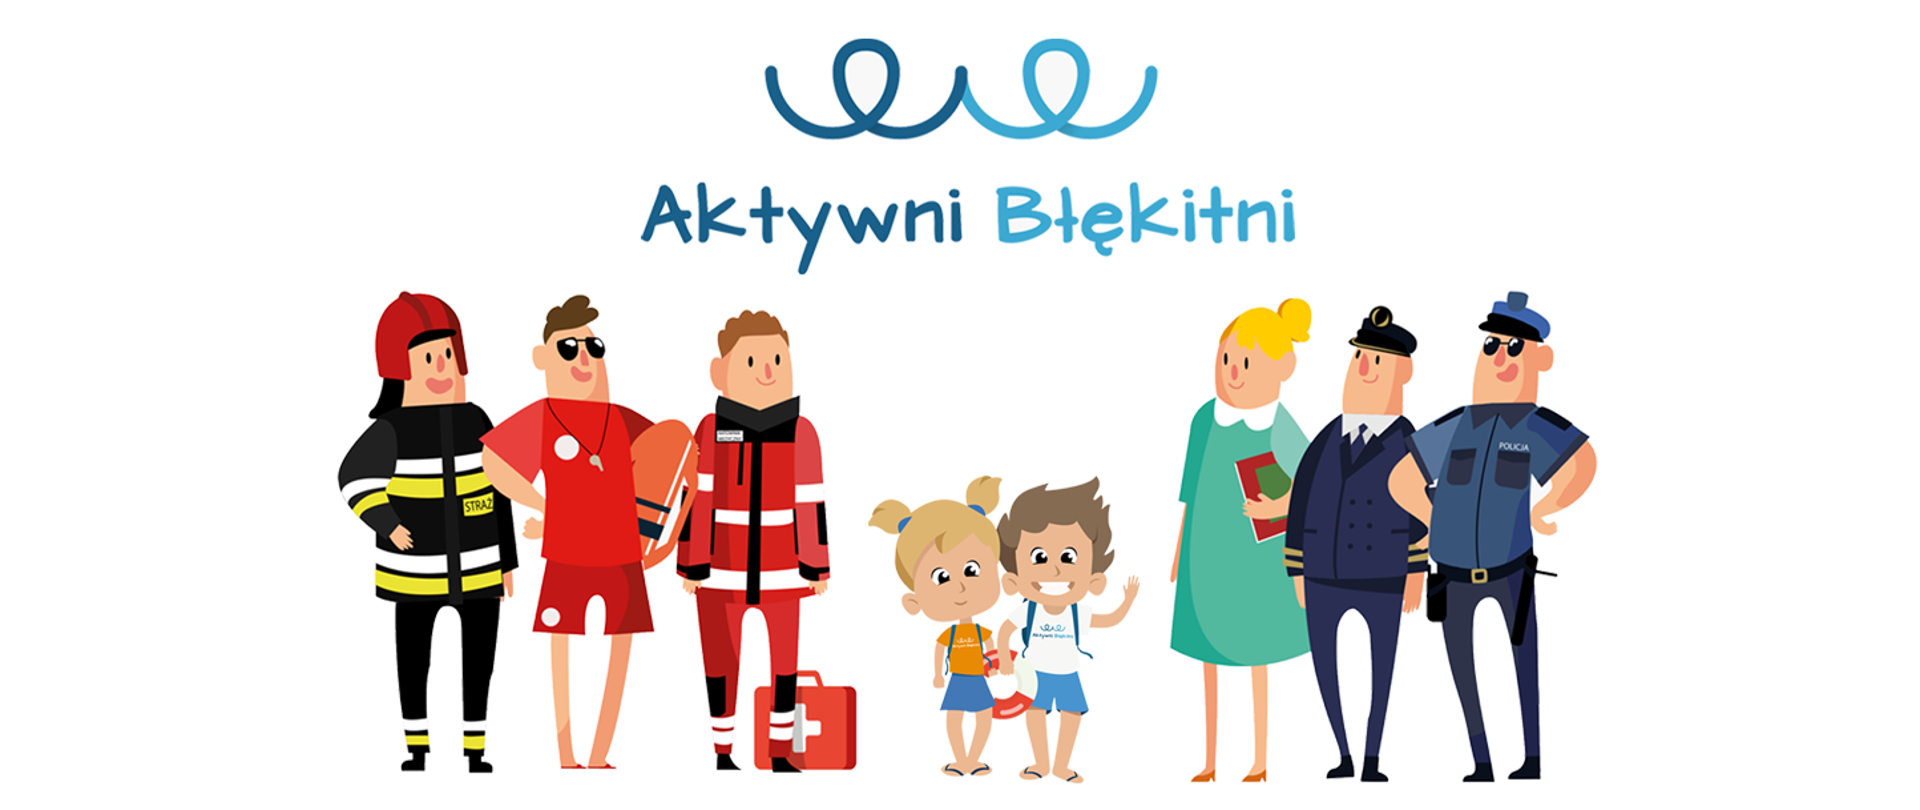 Logo z rysunkowymi postaciami strażaka, ratownika wodnego, ratownika medycznego, policjanta i tak dalej. W środku postaci dwójki dzieci. Na górze napis Aktywni Błękitni